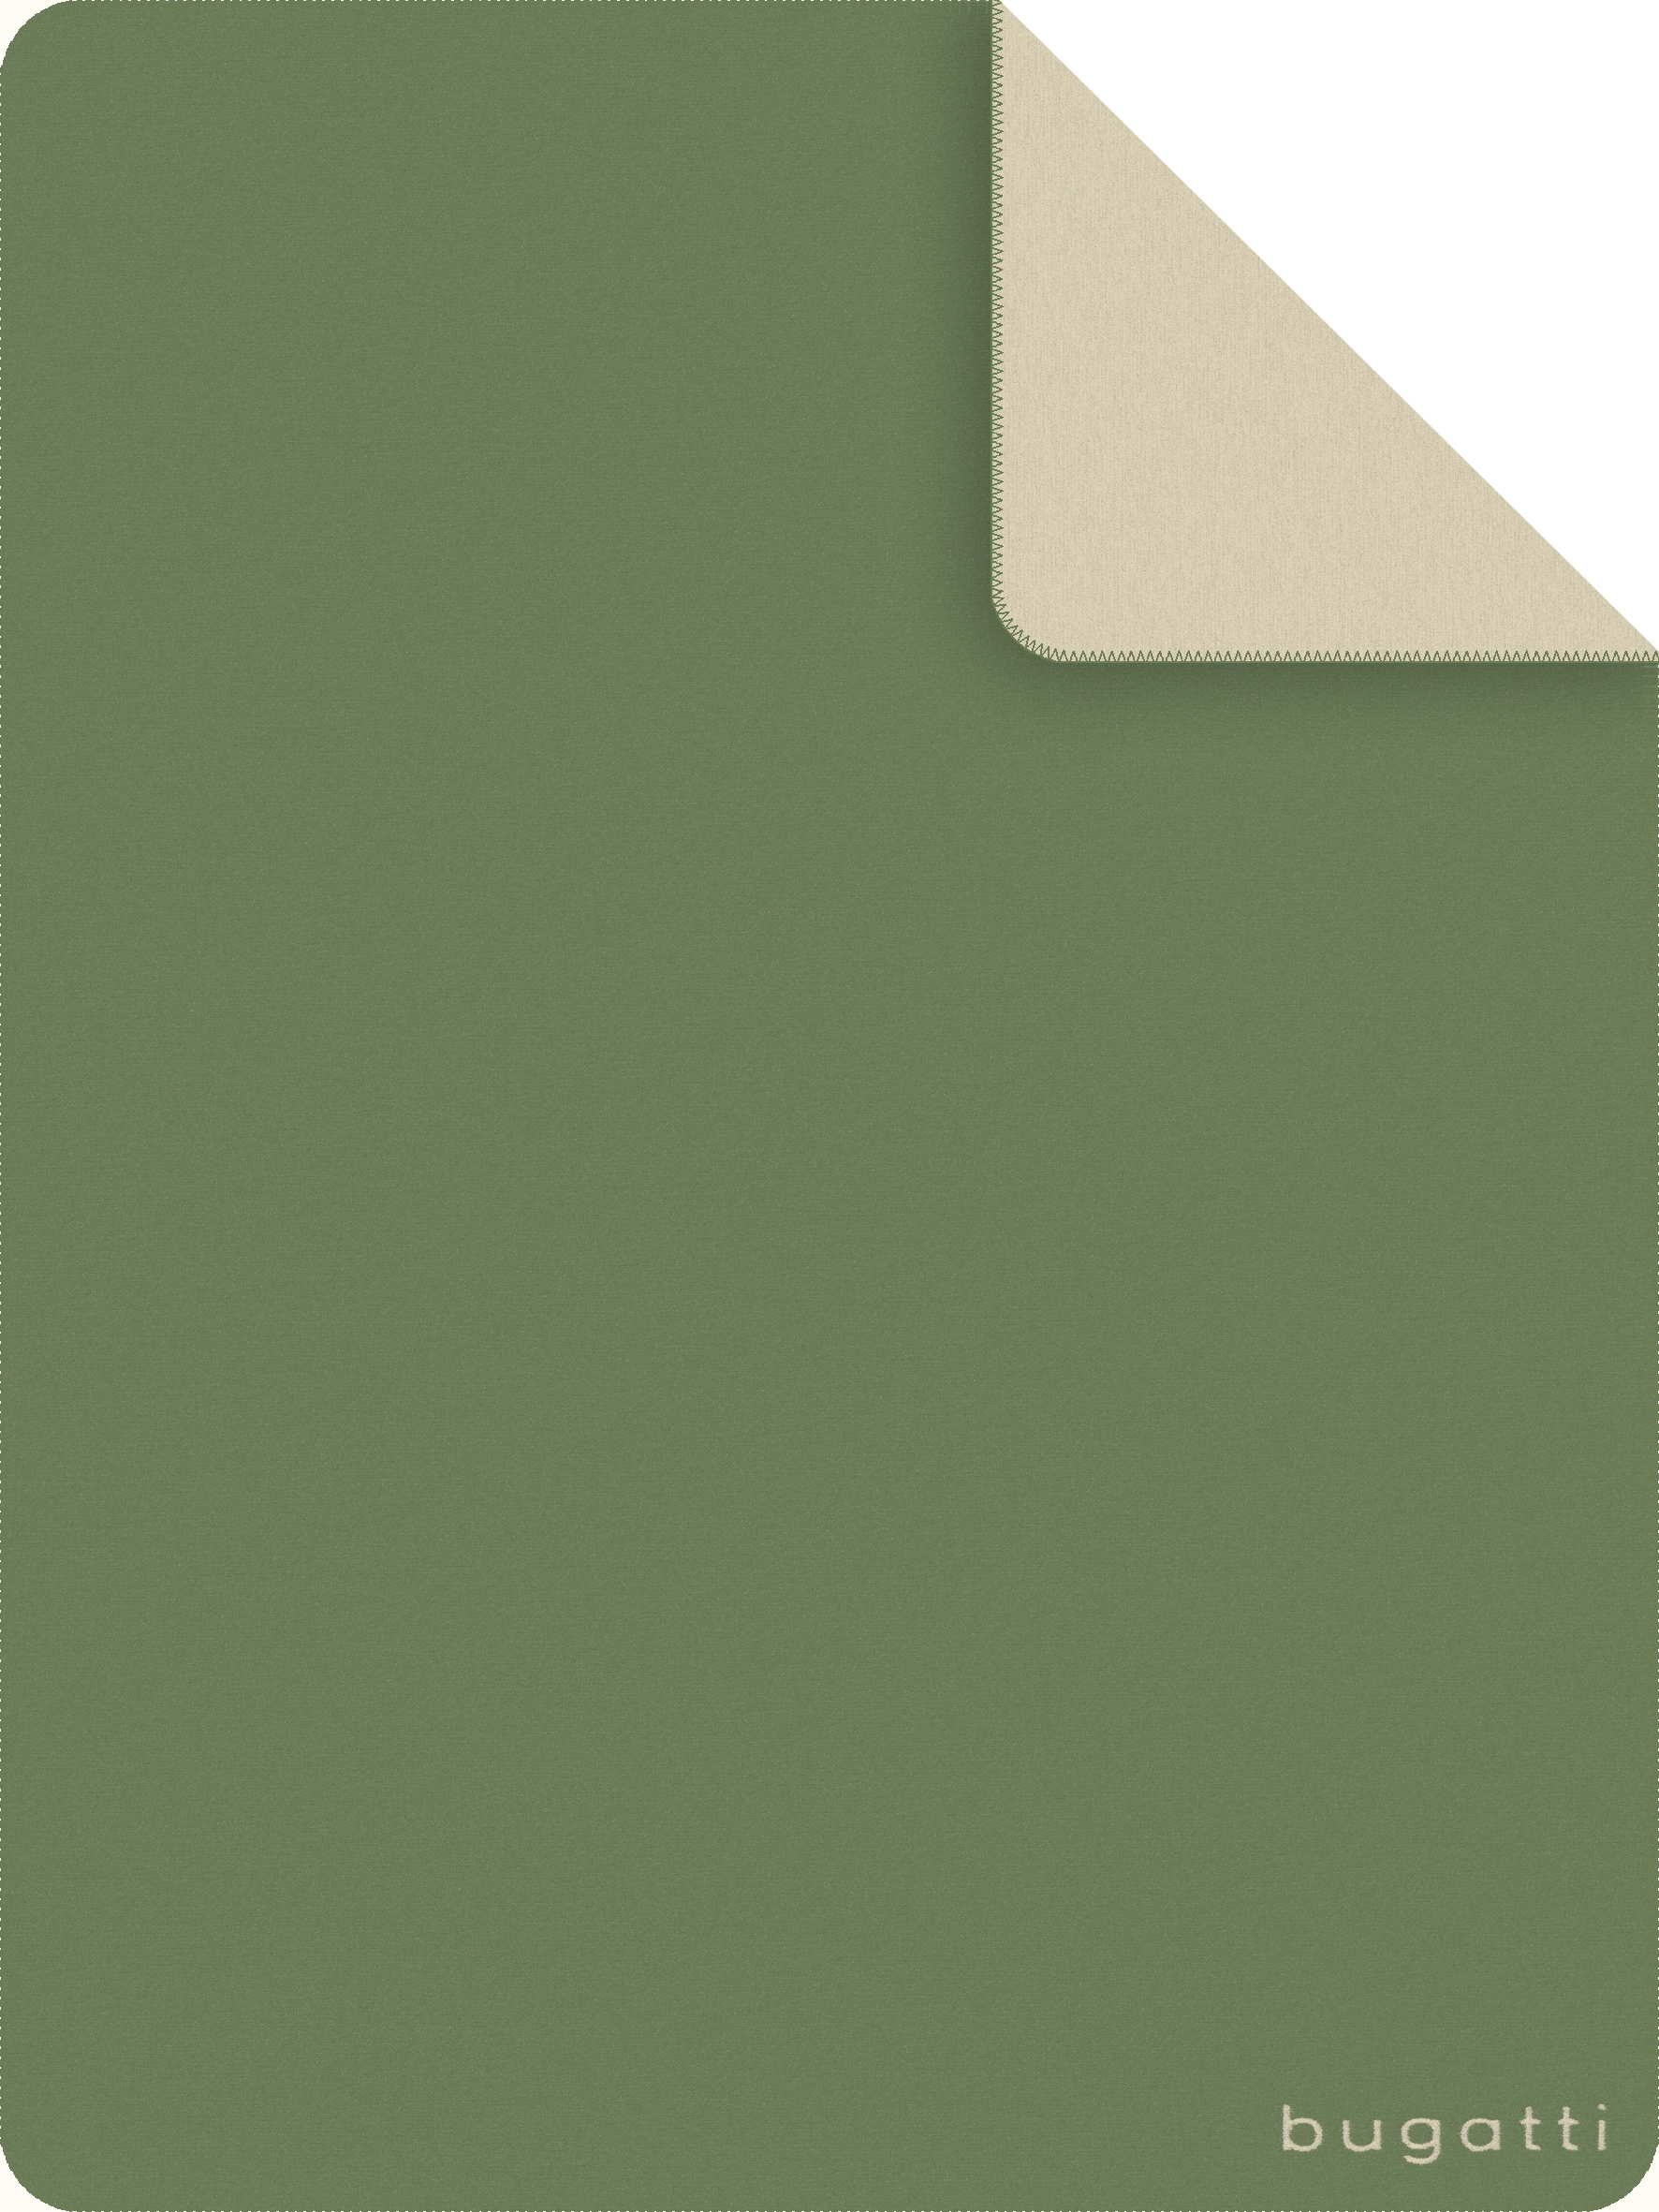 bugatti Wohndecke 150 x 200 cm grün